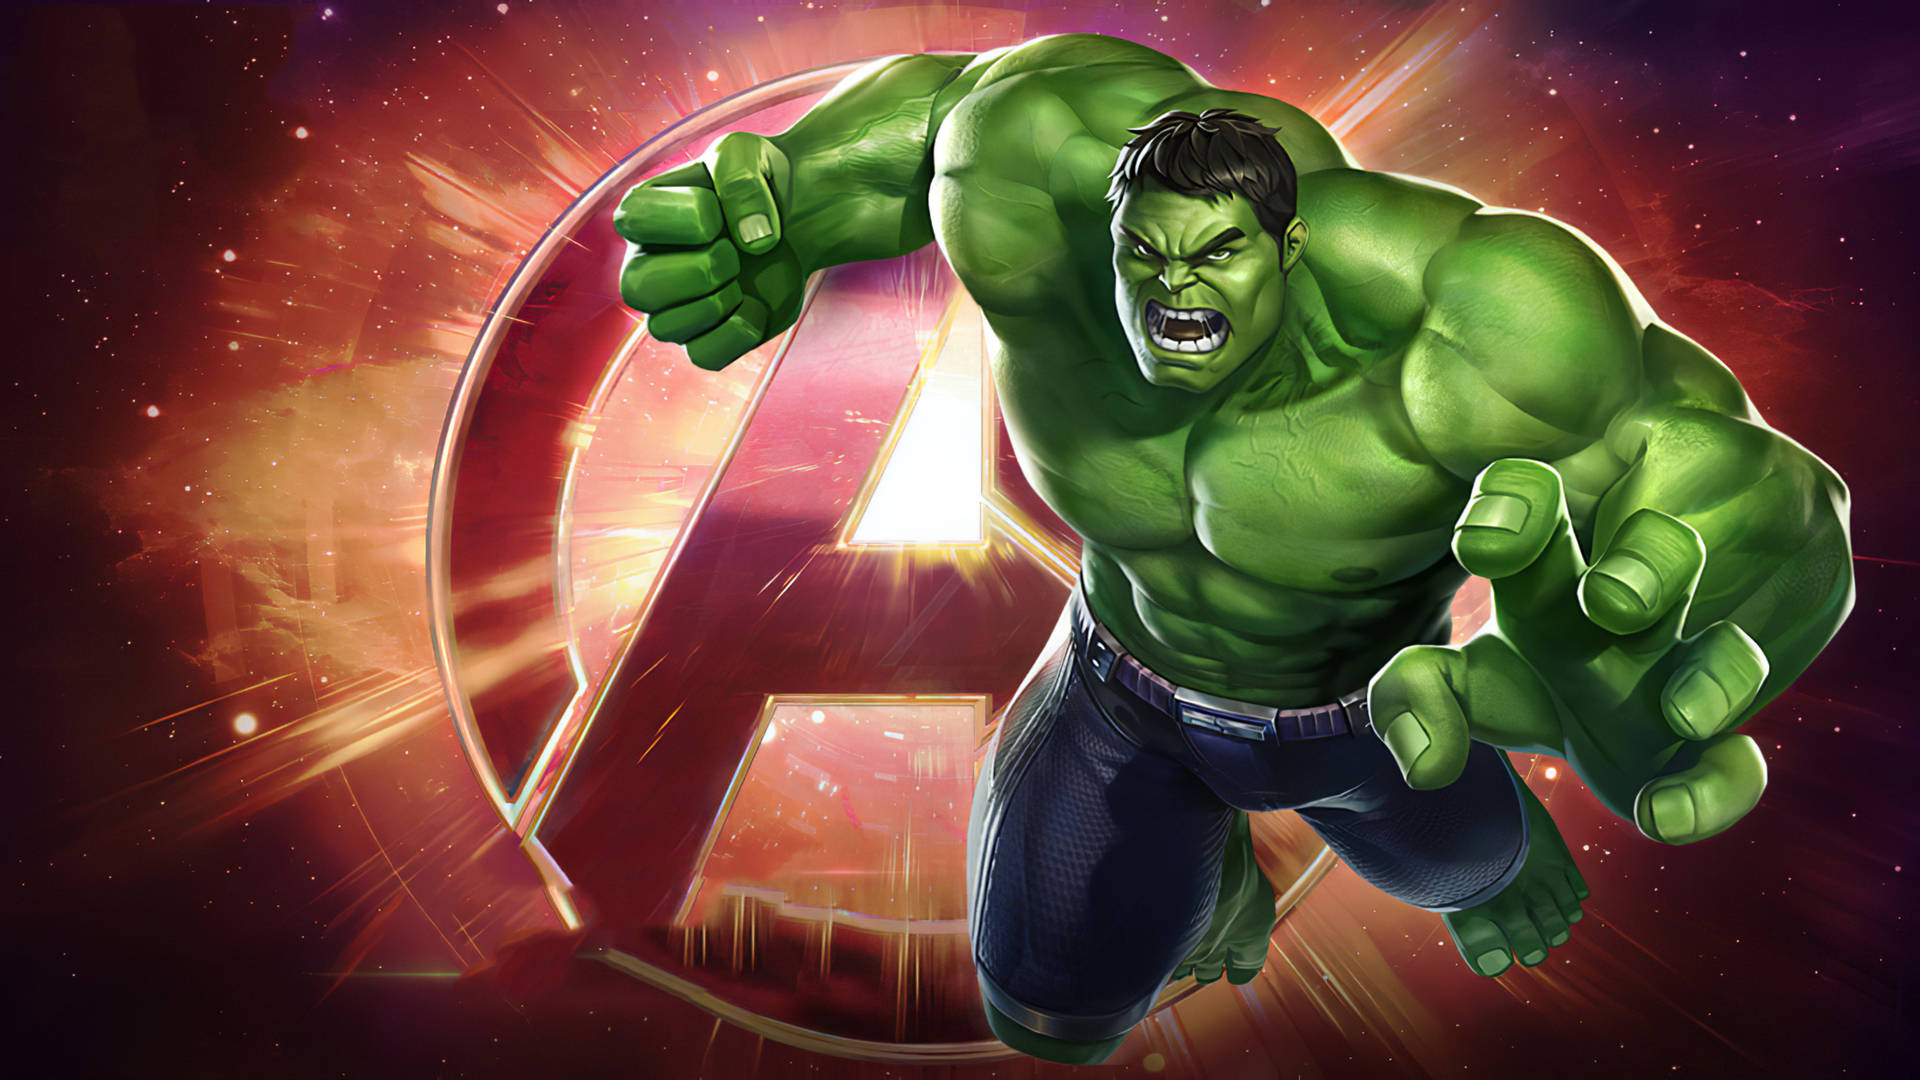 4khulk Marvel Super War - 4k Hulk Marvel Super War Wallpaper